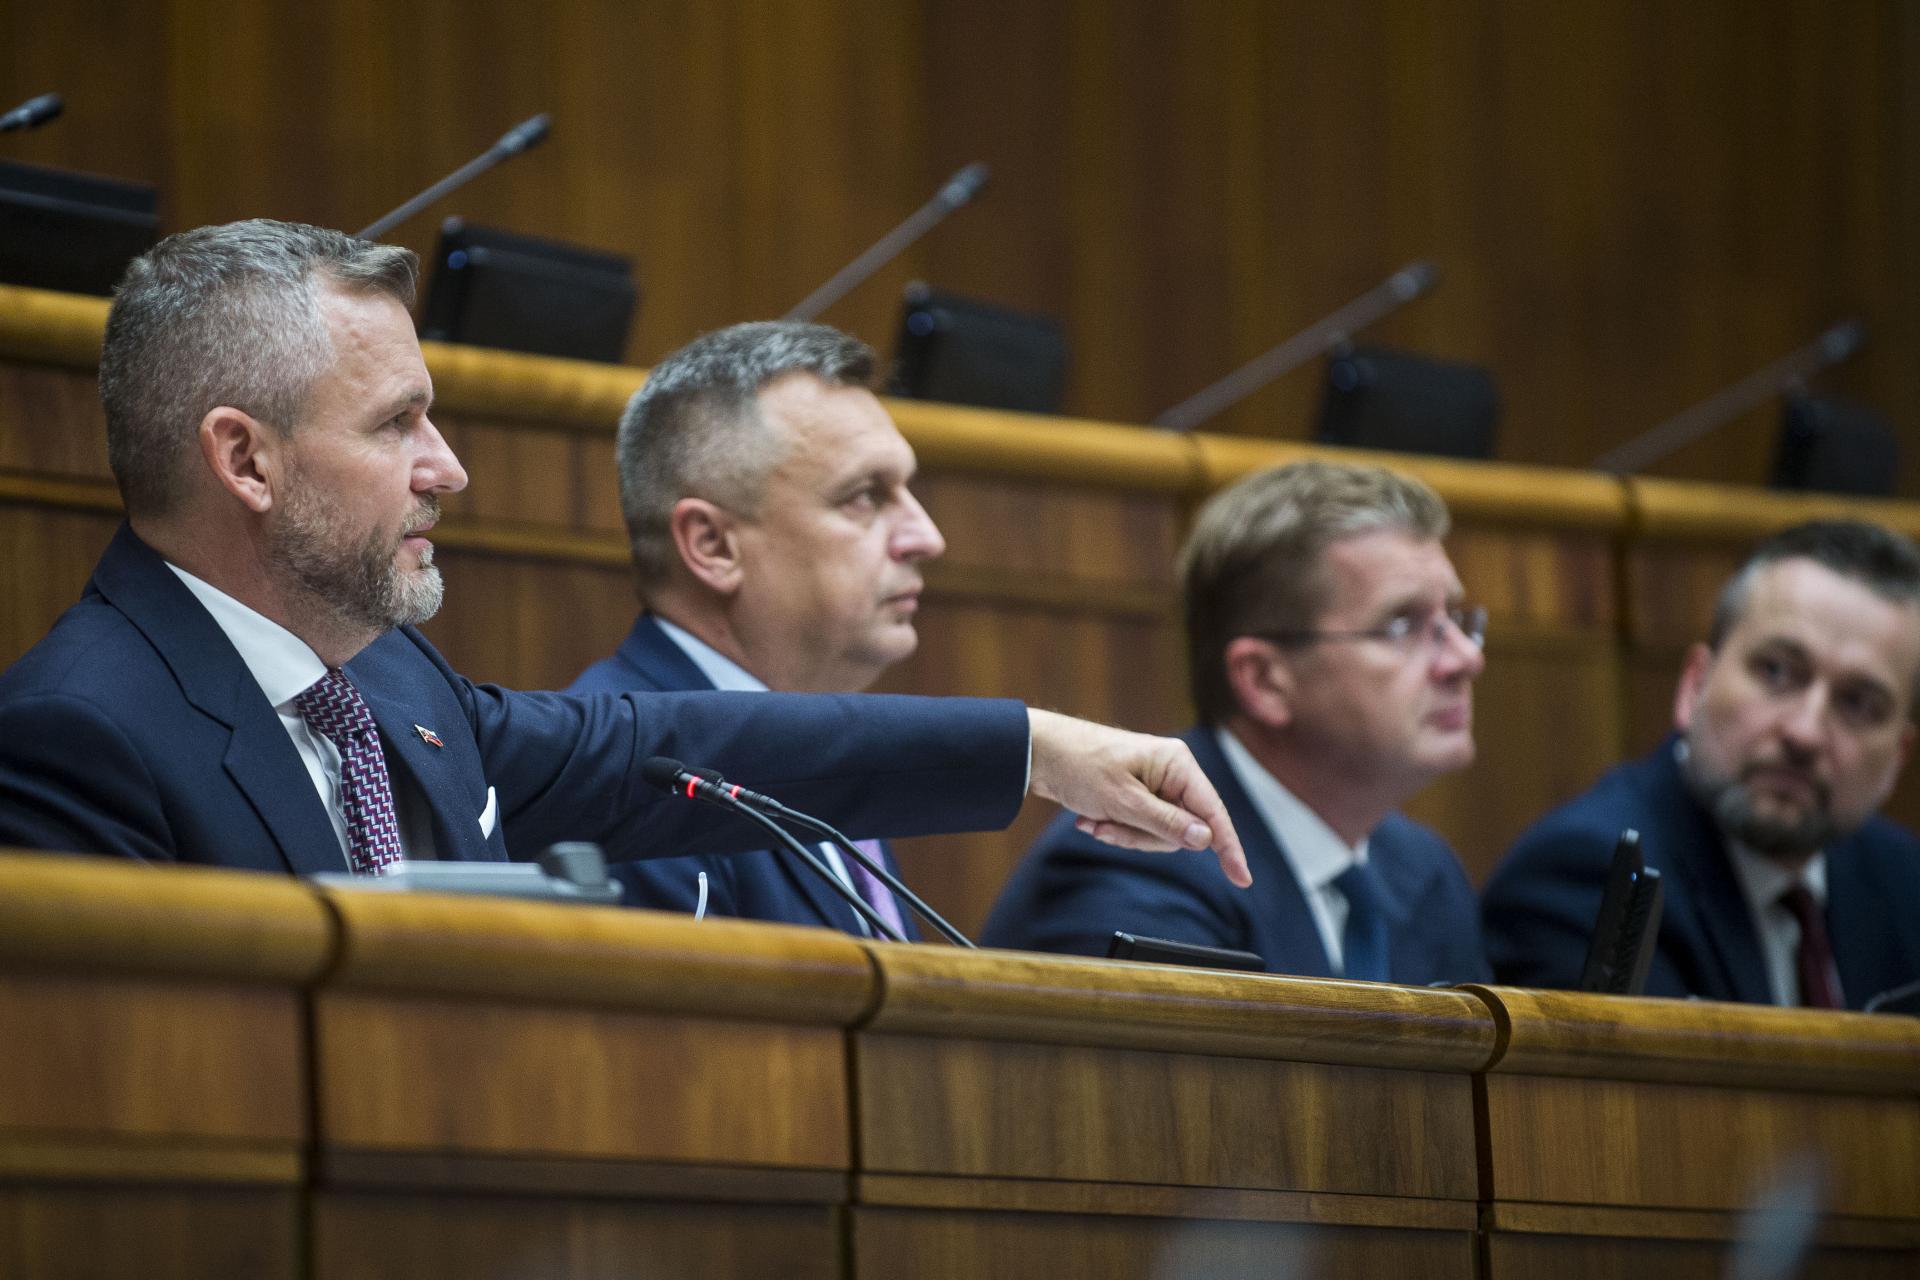 Rokovanie parlamentu: Rozpočet vytlačil rušenie prokuratúry. Opozícia uspela s obštrukciou